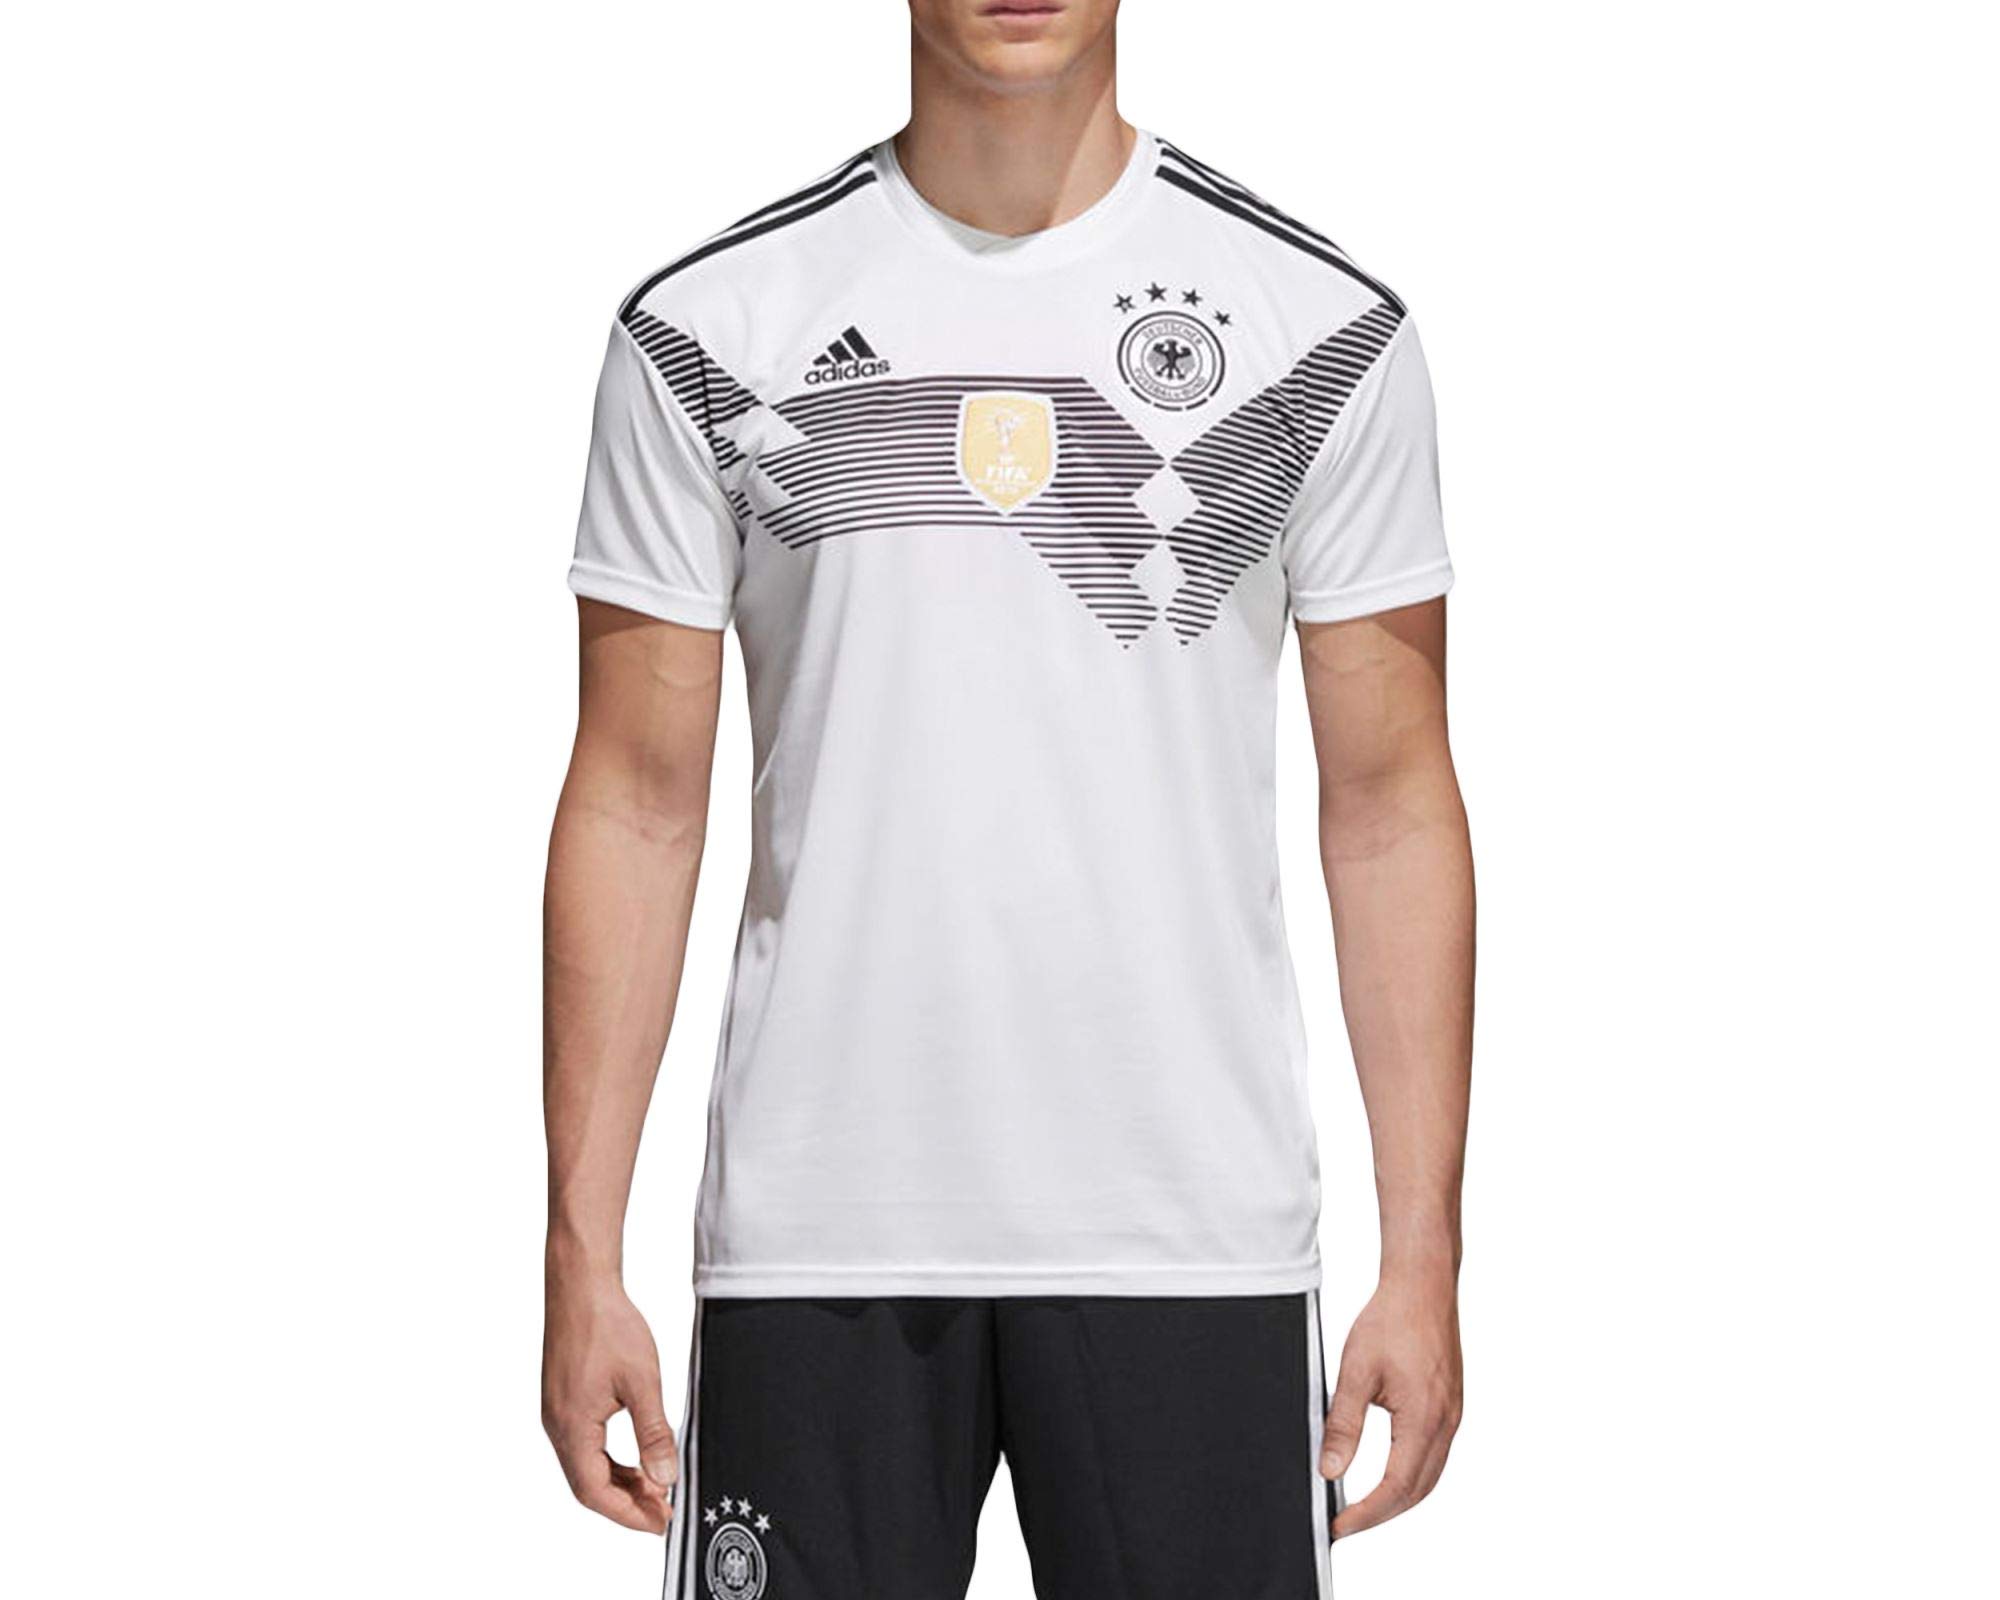 Adidas DFB Trikot Home WM 2018 Herren, Weiß (white/black), M